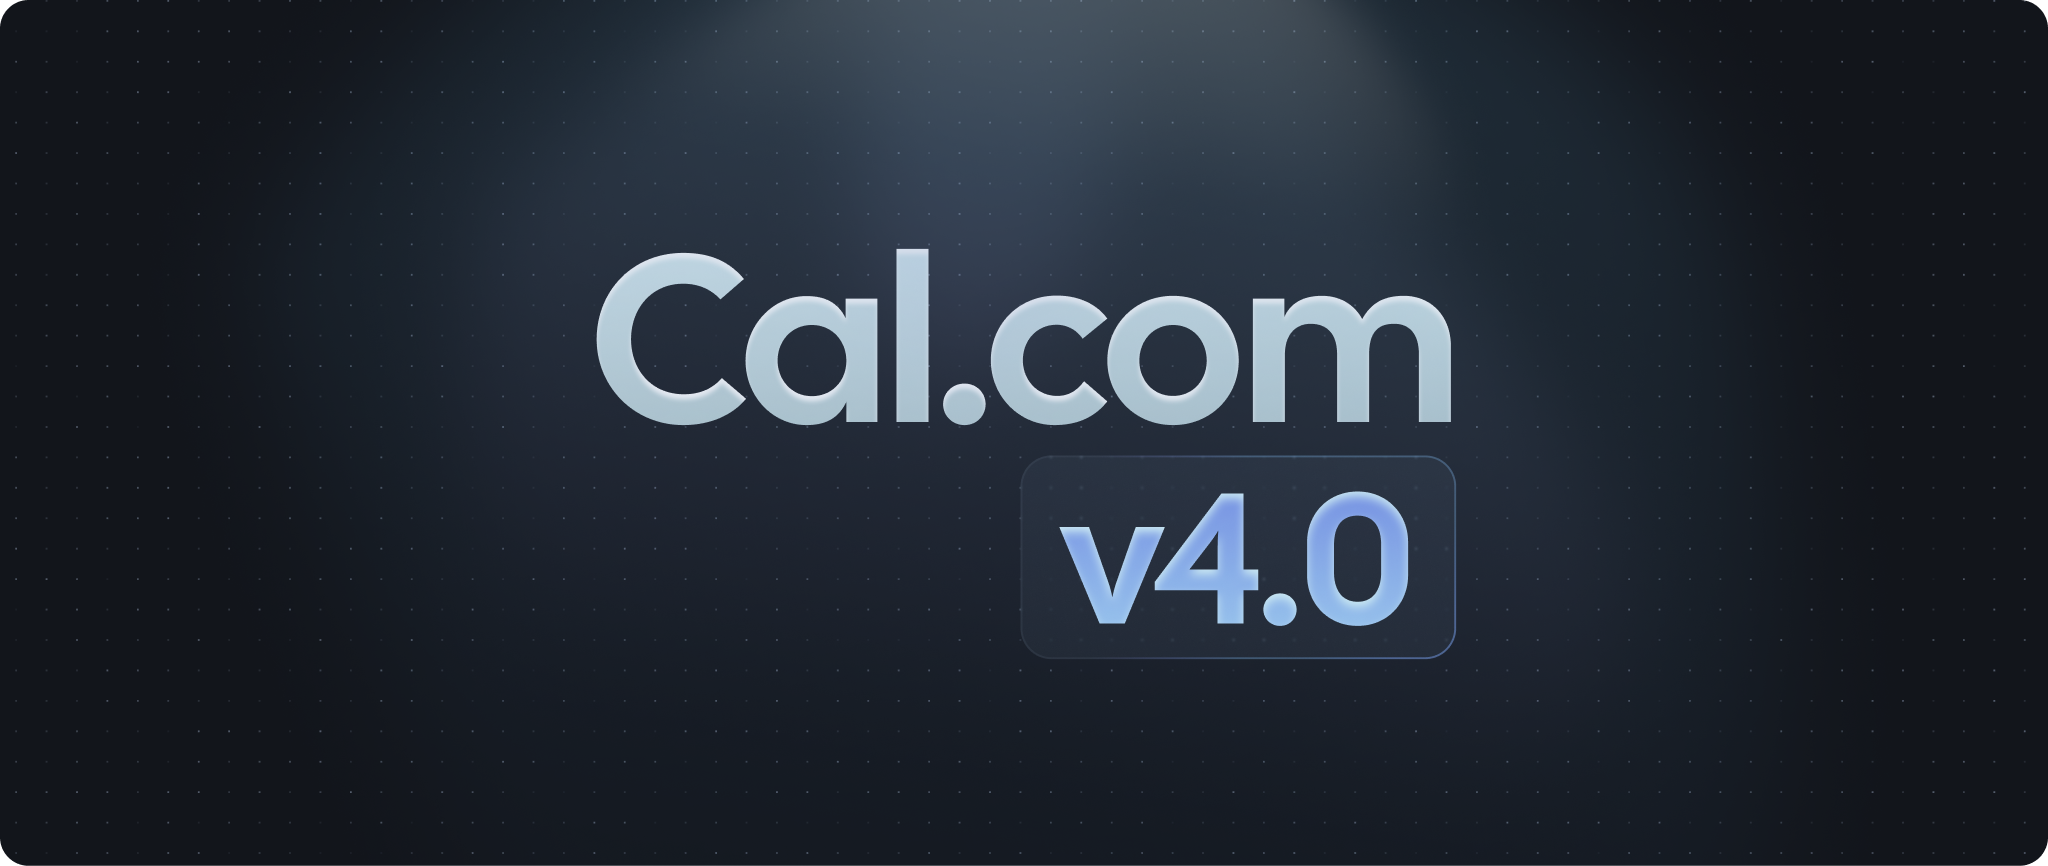 Cal.com v4.0